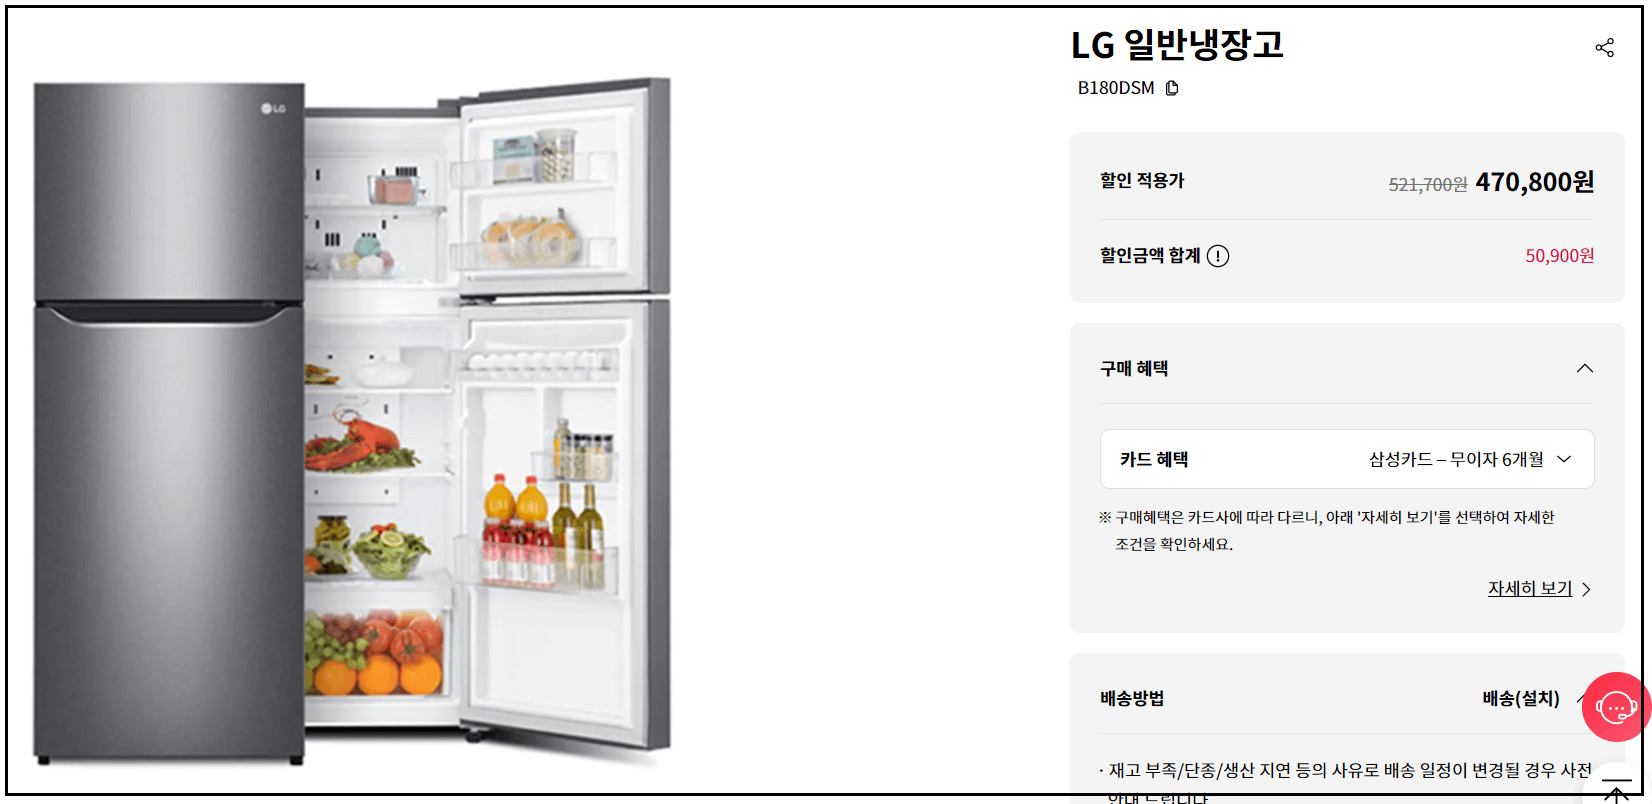 LG 일반 냉장고 사진